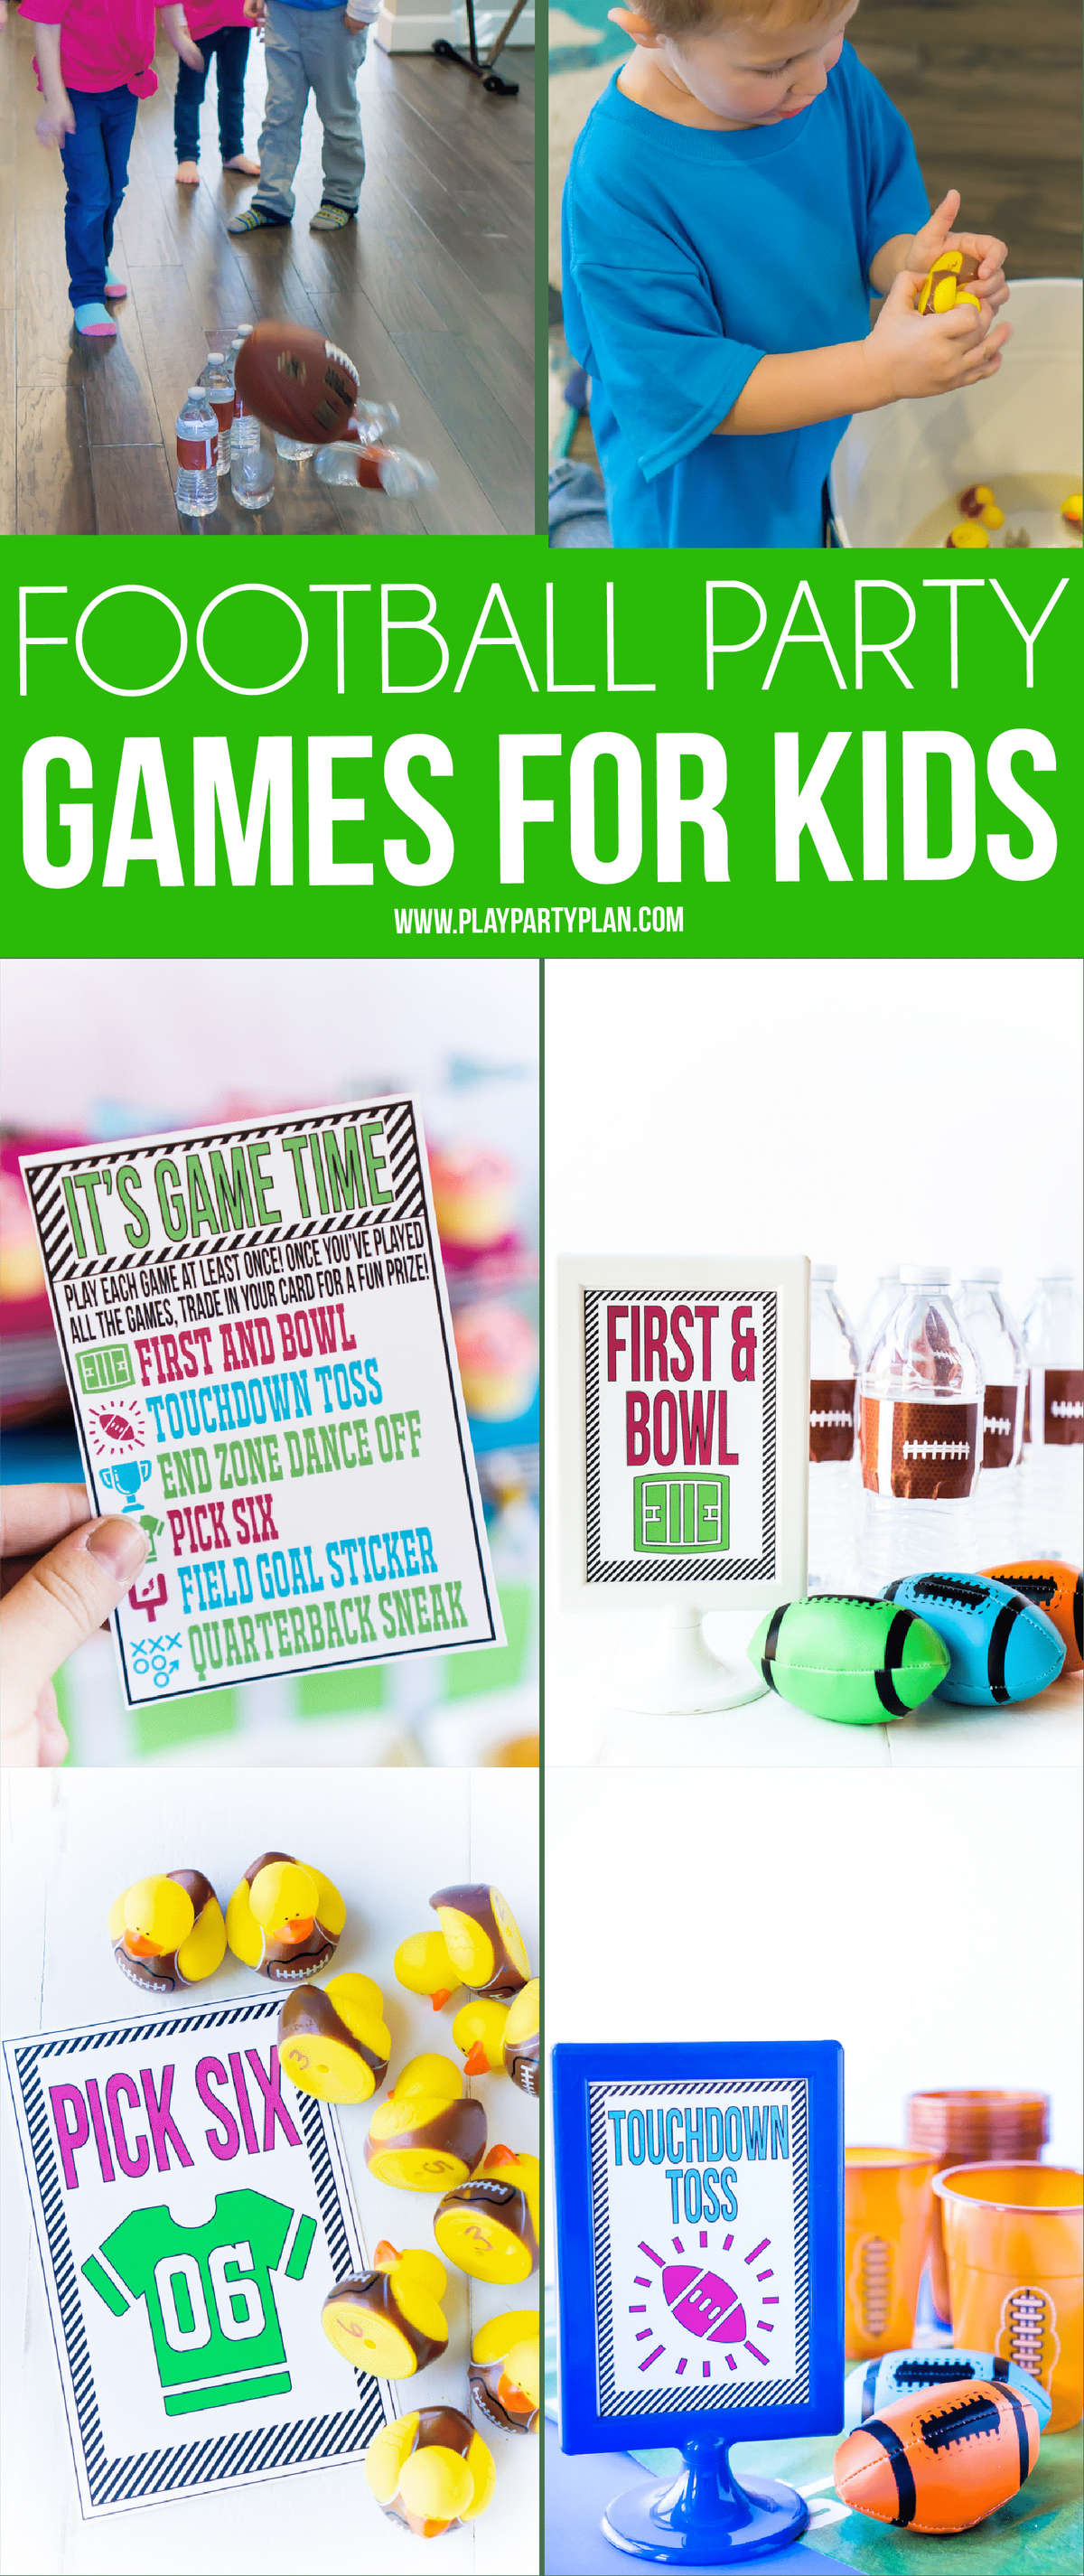 Zrób to sam piłkarskie gry towarzyskie dla dzieci z darmowymi kartami do wydrukowania! Zdecydowanie sześć najlepszych rzeczy do zrobienia na imprezie piłkarskiej, czy to Super Bowl, czy przyjęcie urodzinowe dla dzieci!